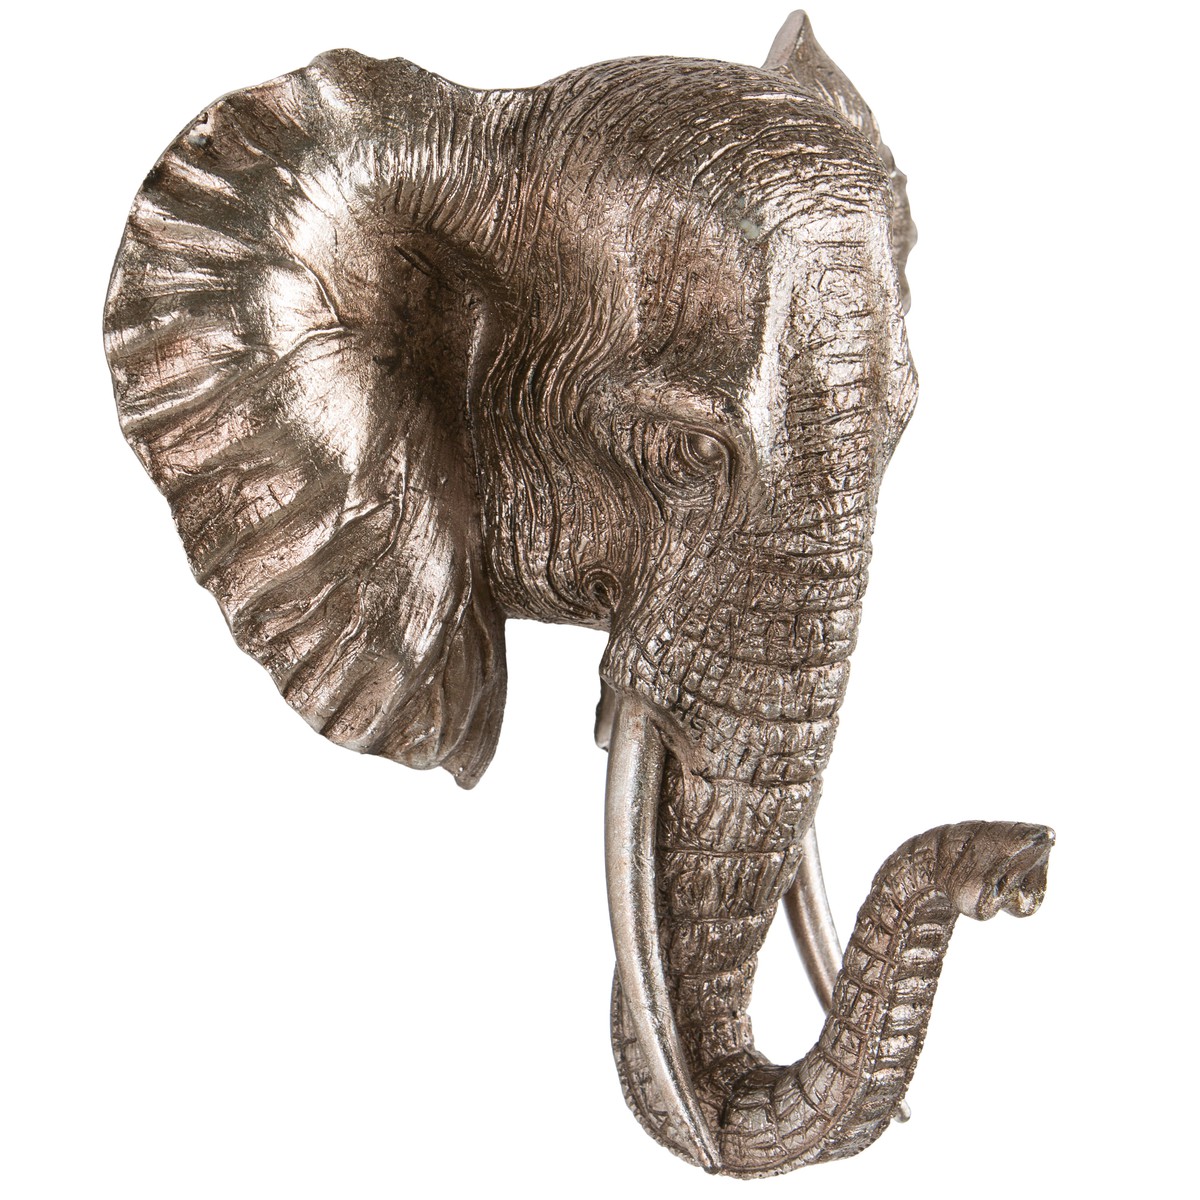   Trophée Elephant  27.5x26x15cm